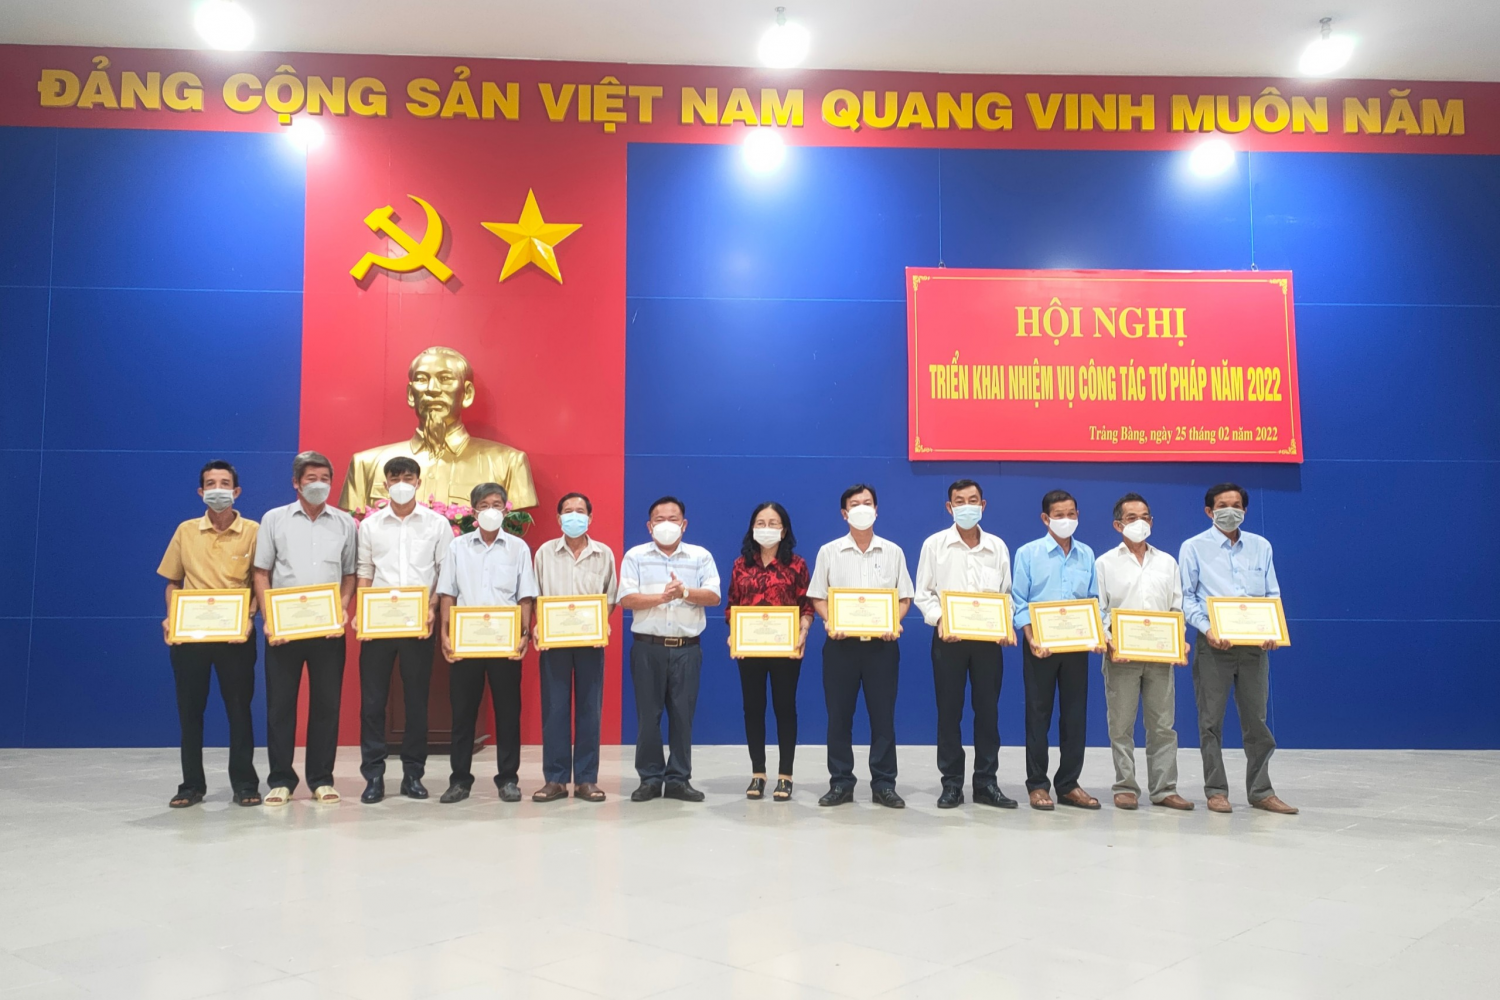 Ảnh: Đồng chí Hà Minh Dảo - Phó chủ tịch UBND thị xã Trảng Bàng trao thưởng cho các tập thể và cá nhân